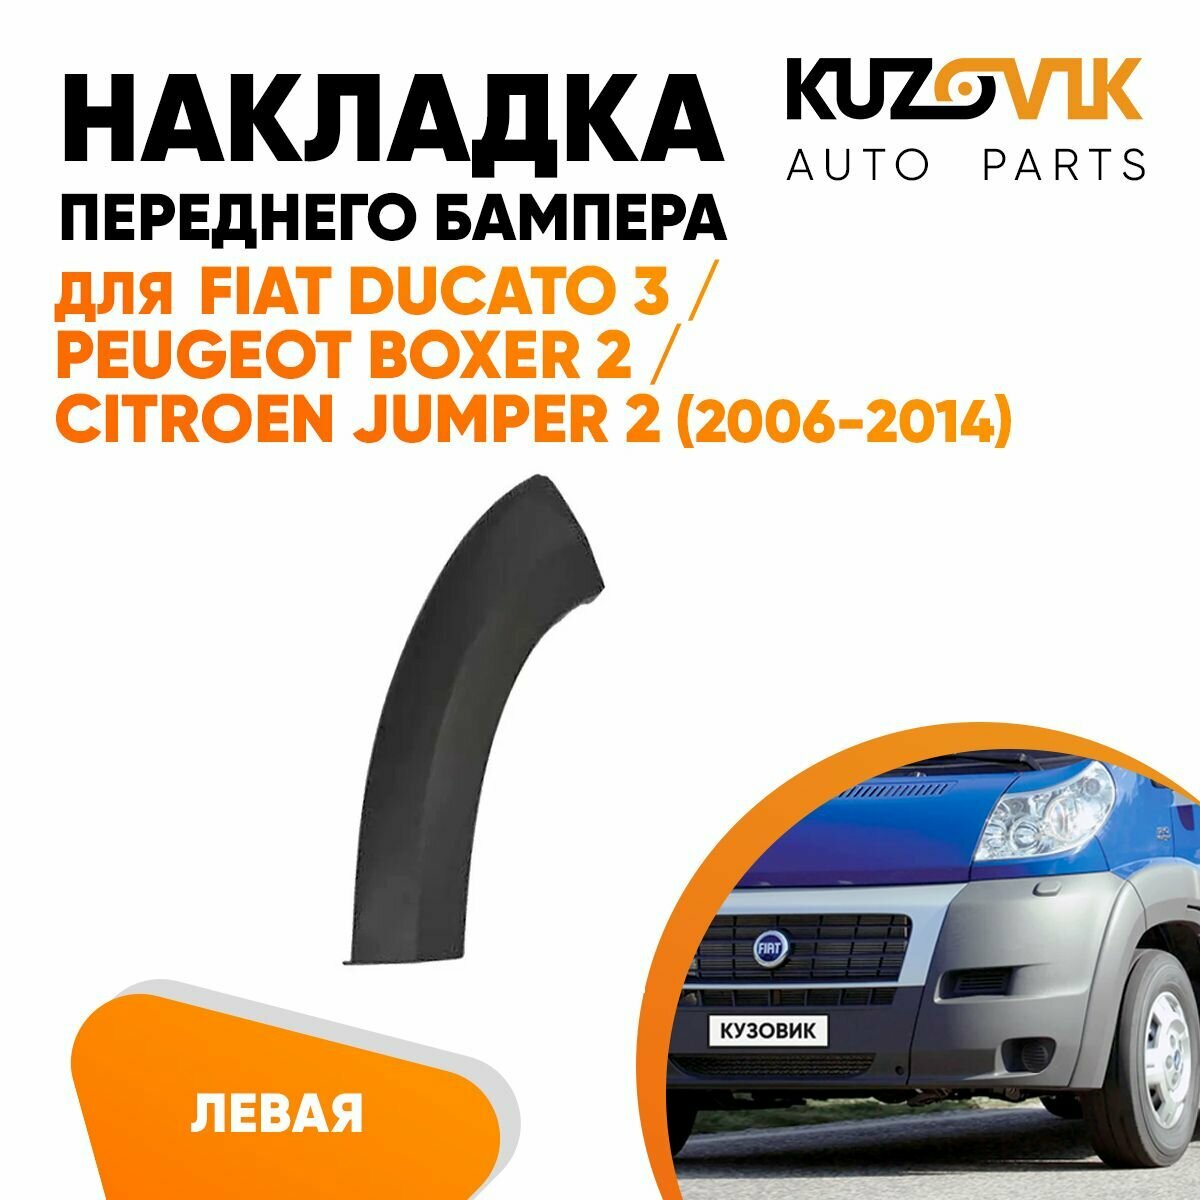 Накладка переднего бампера, расширитель для Фиат Дукато Fiat Ducato 3 / Пежо Боксер Peugeot Boxer 2 / Ситроен Джампер Citroen Jumper 2 (2006-2014) левая